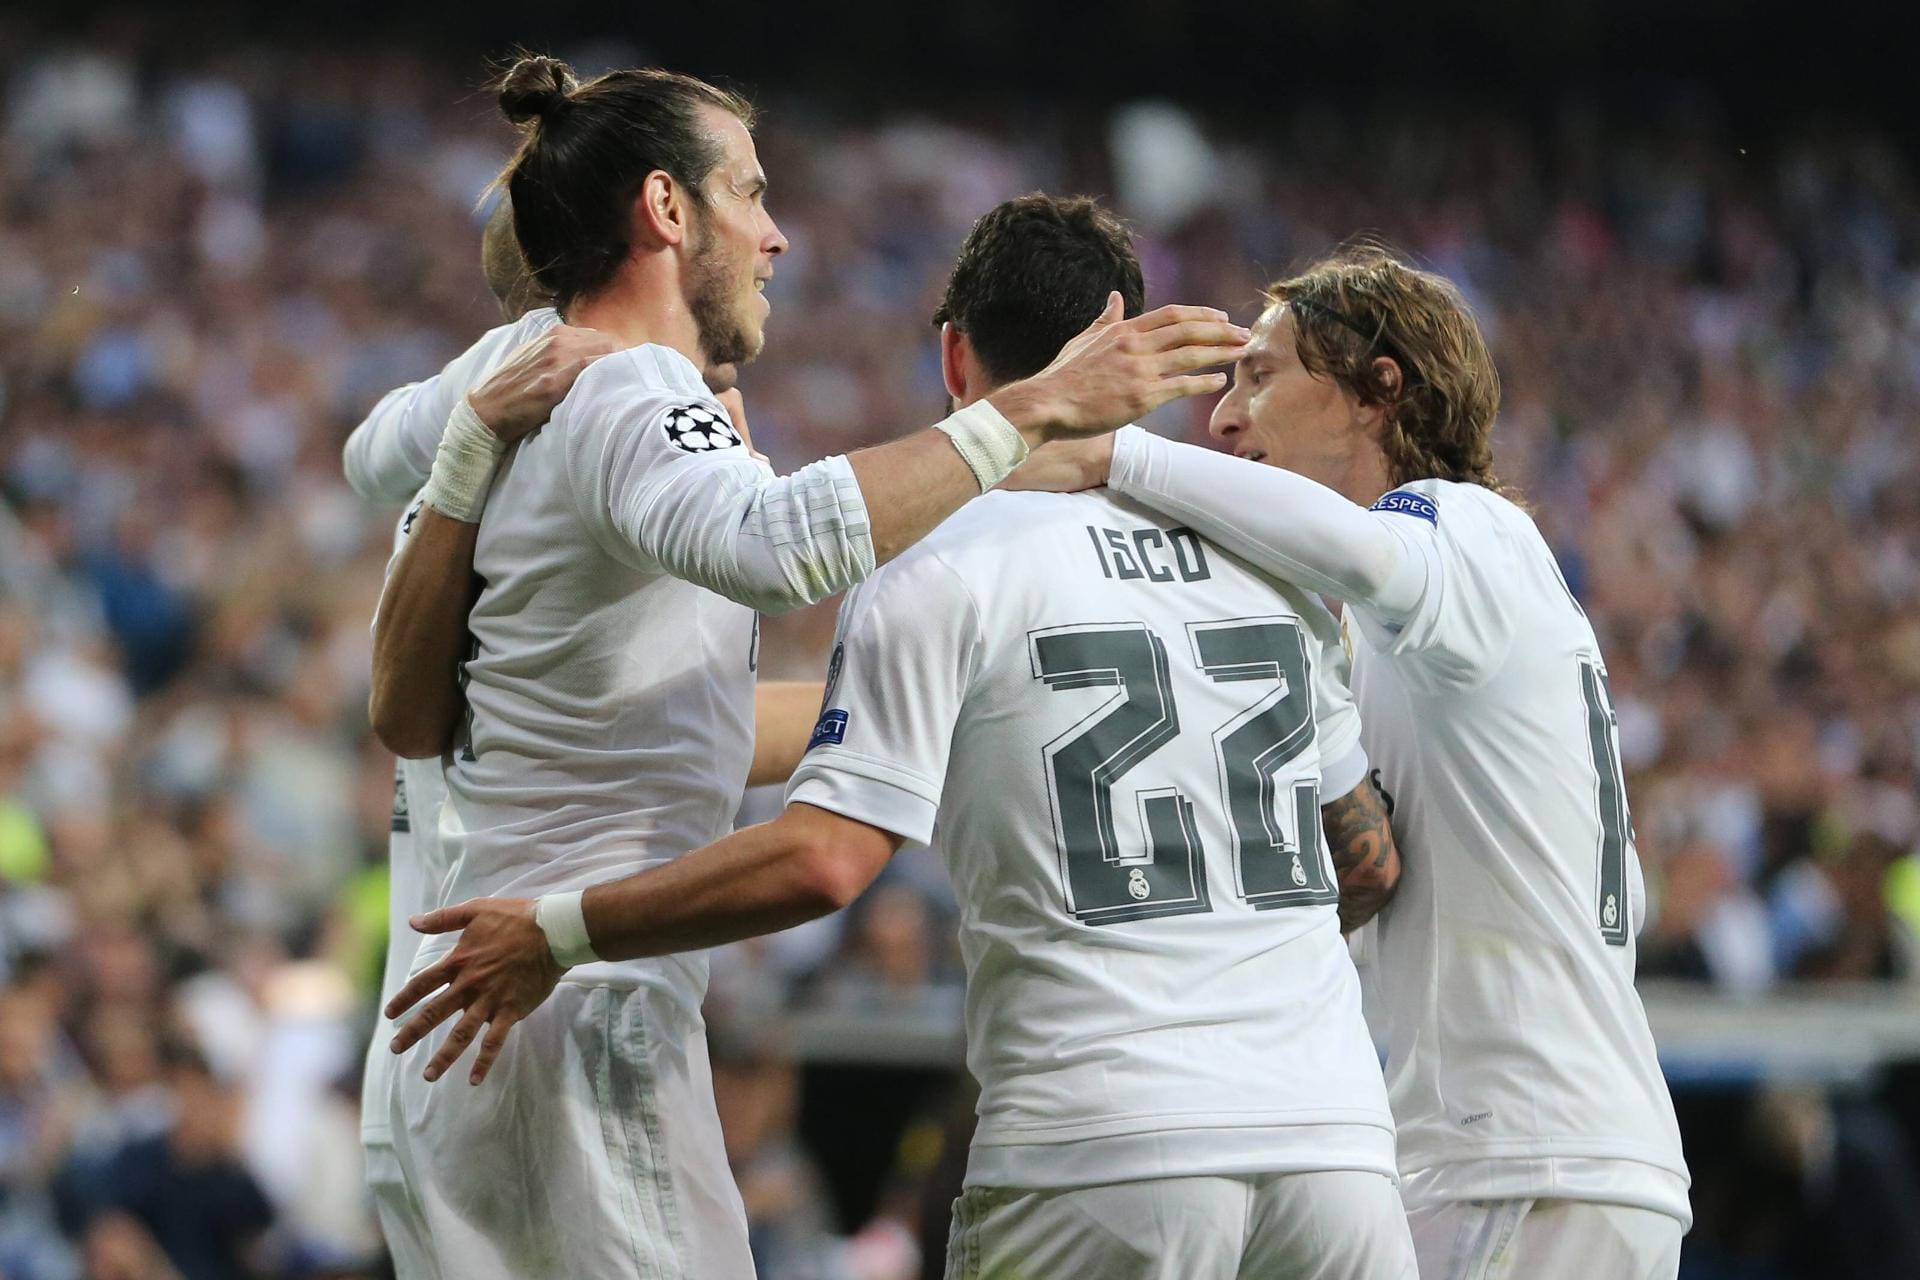 Die zweite Halbzeit blieb torlos und so durften sich Bale und Kollegen über den Einzug ins Finale am 28. Mai in Mailand freuen. Dort kommt es zum Stadtduell mit Atlético - bereits im Jahr 2014 die Finalpaarung der Königsklasse.